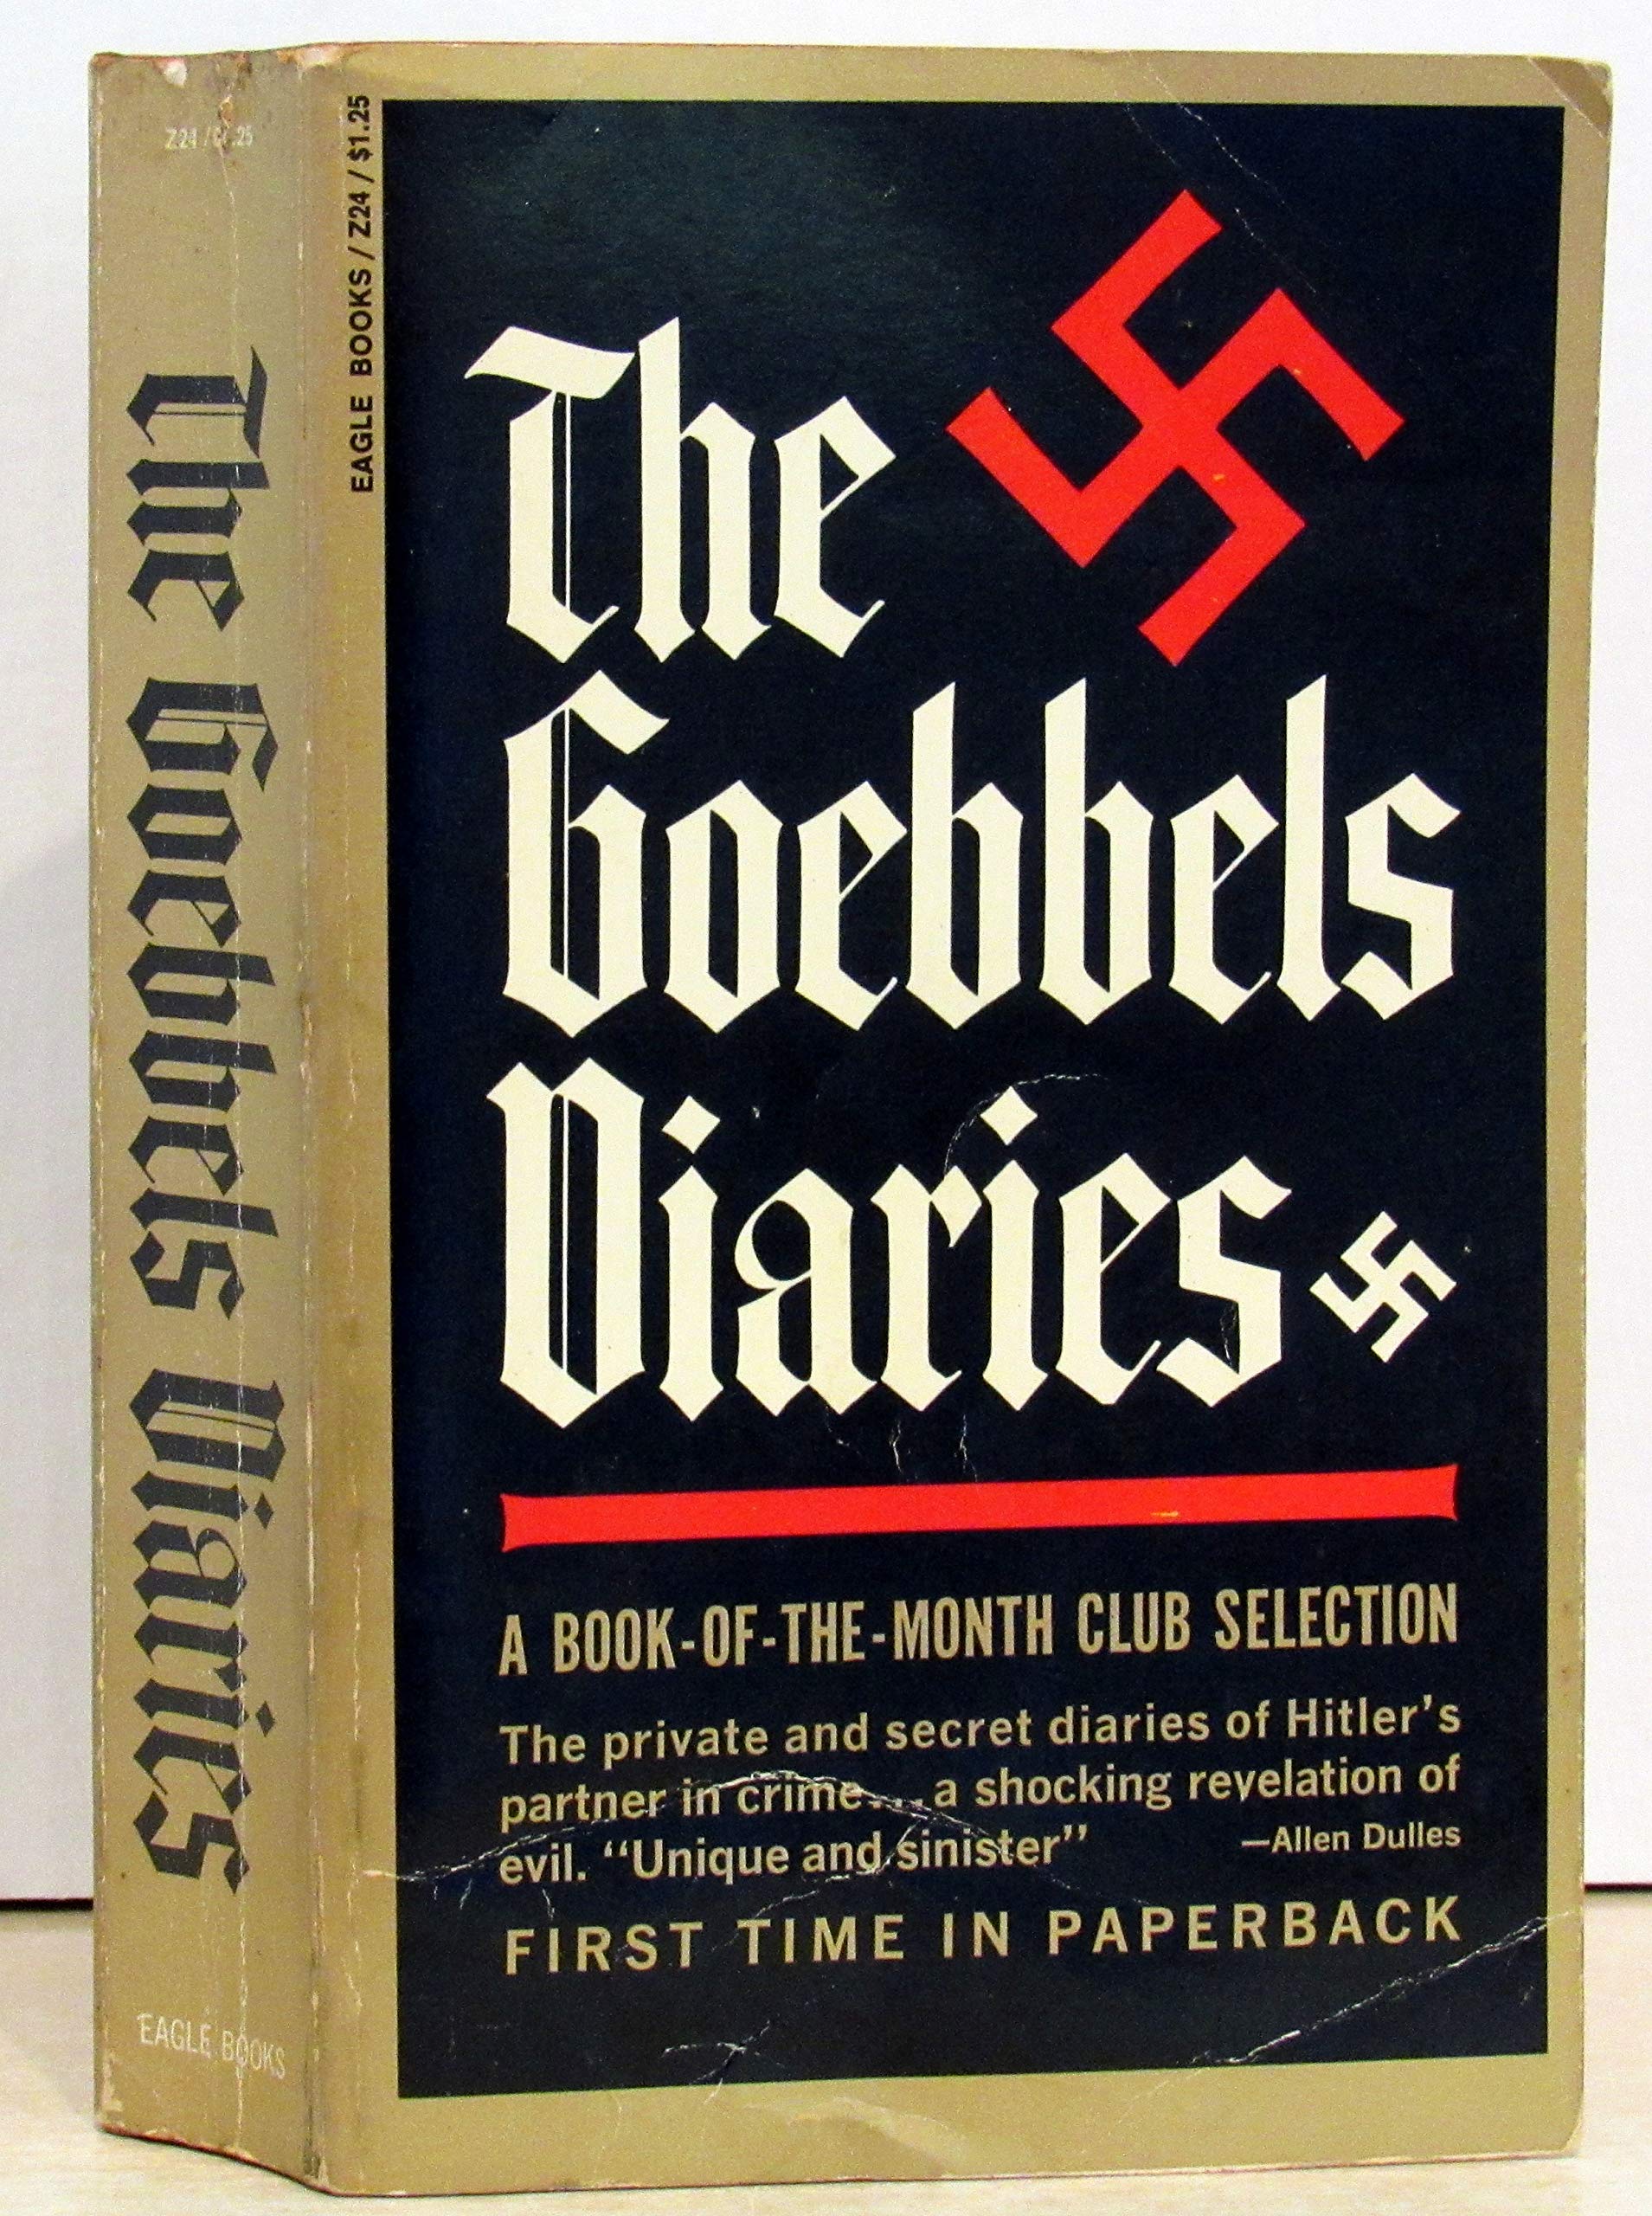 The Goebbels Diaries